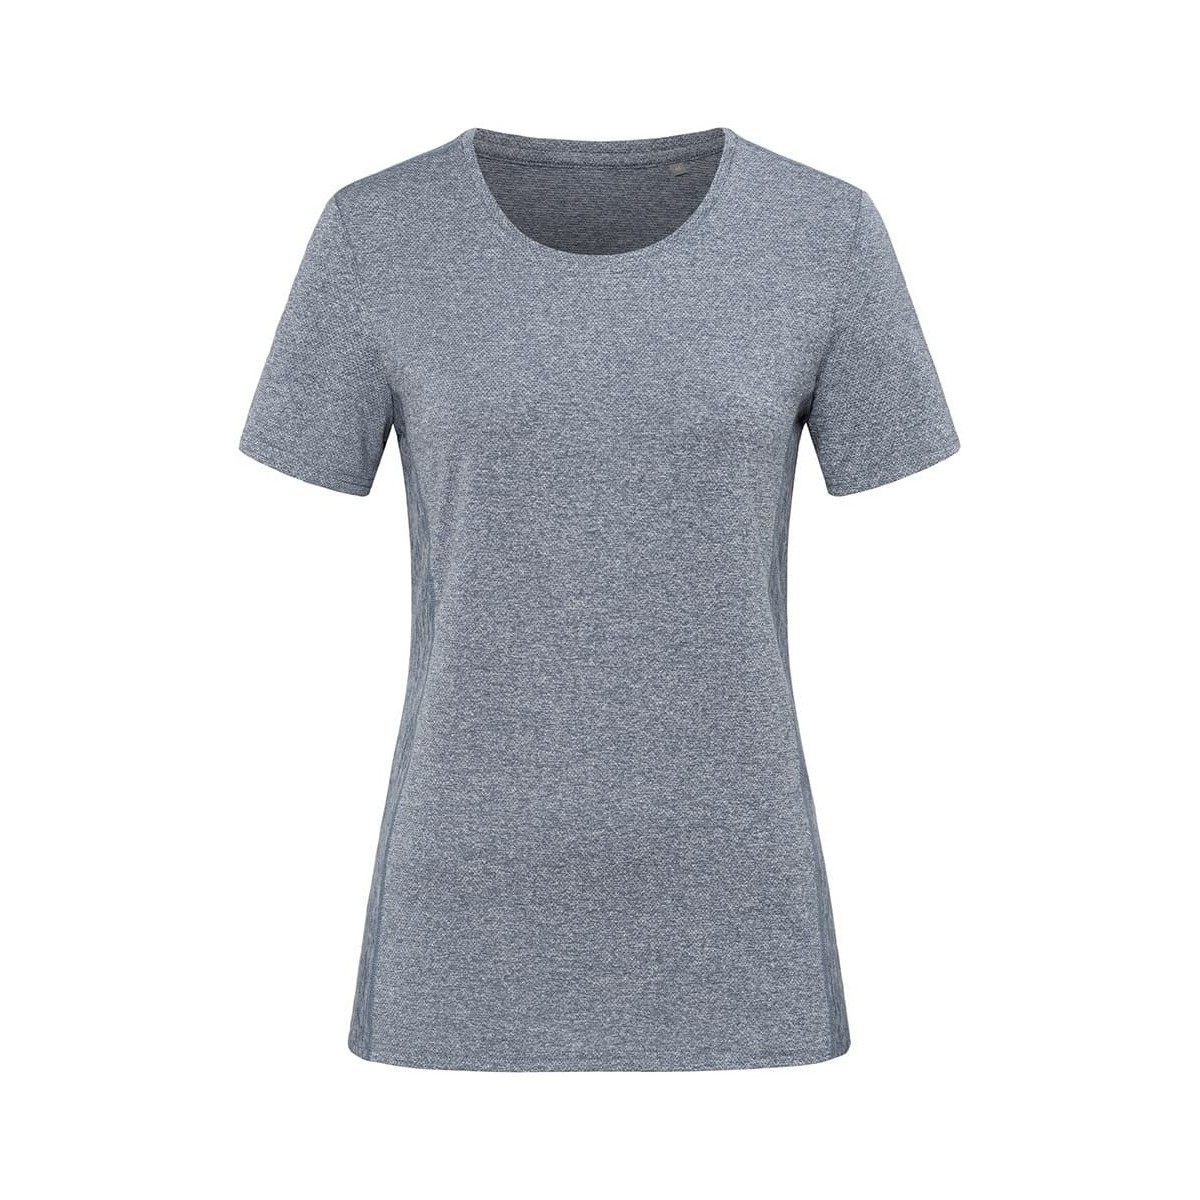 Abbigliamento Donna T-shirts a maniche lunghe Stedman AB499 Multicolore